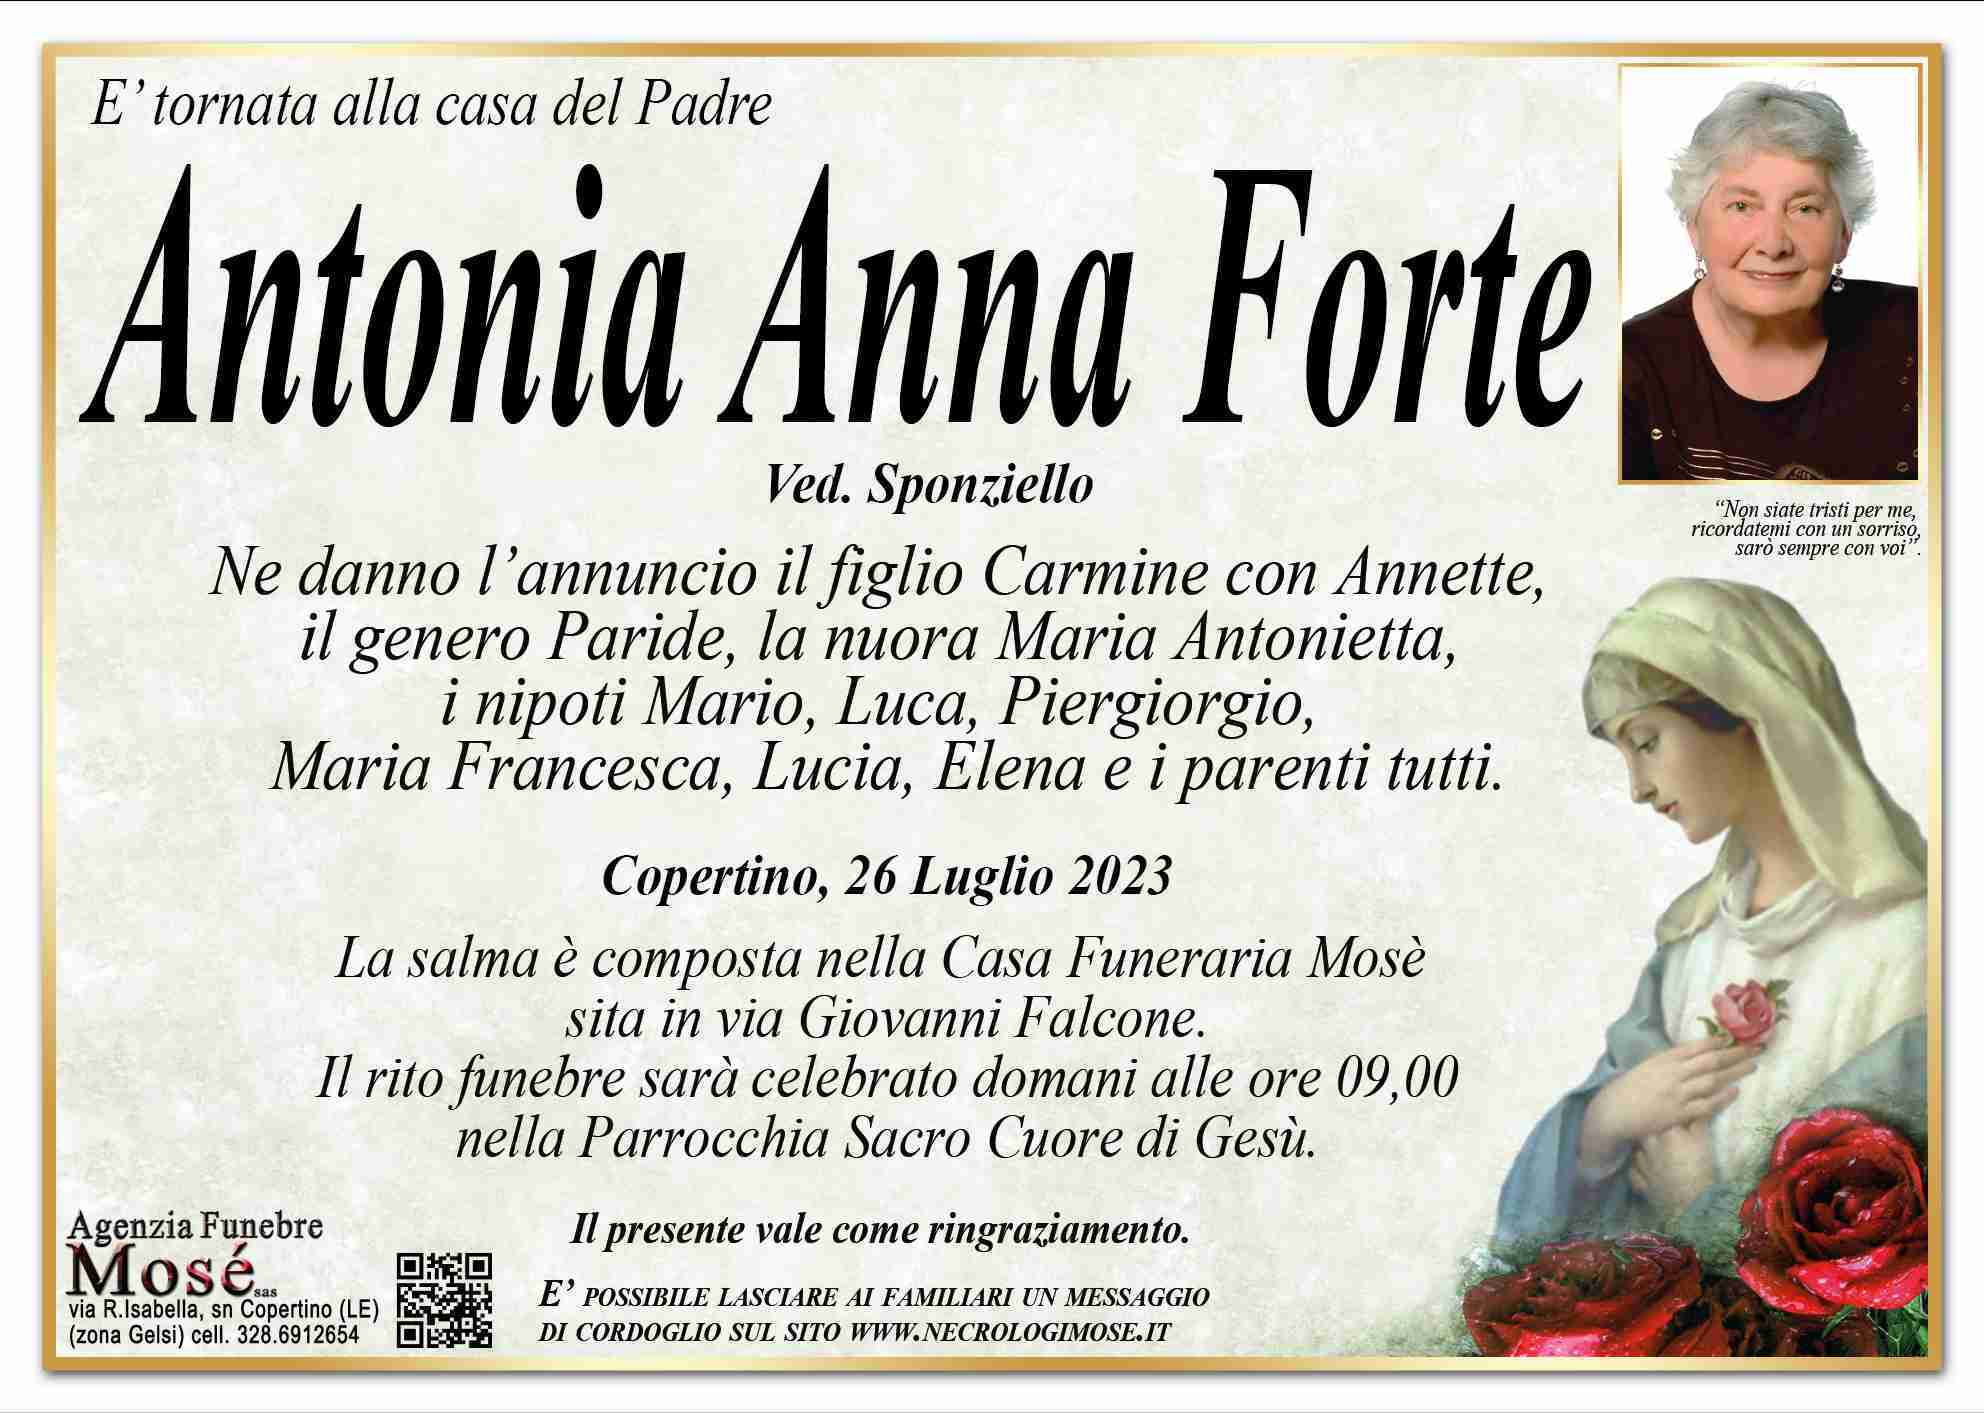 Antonia Anna Forte